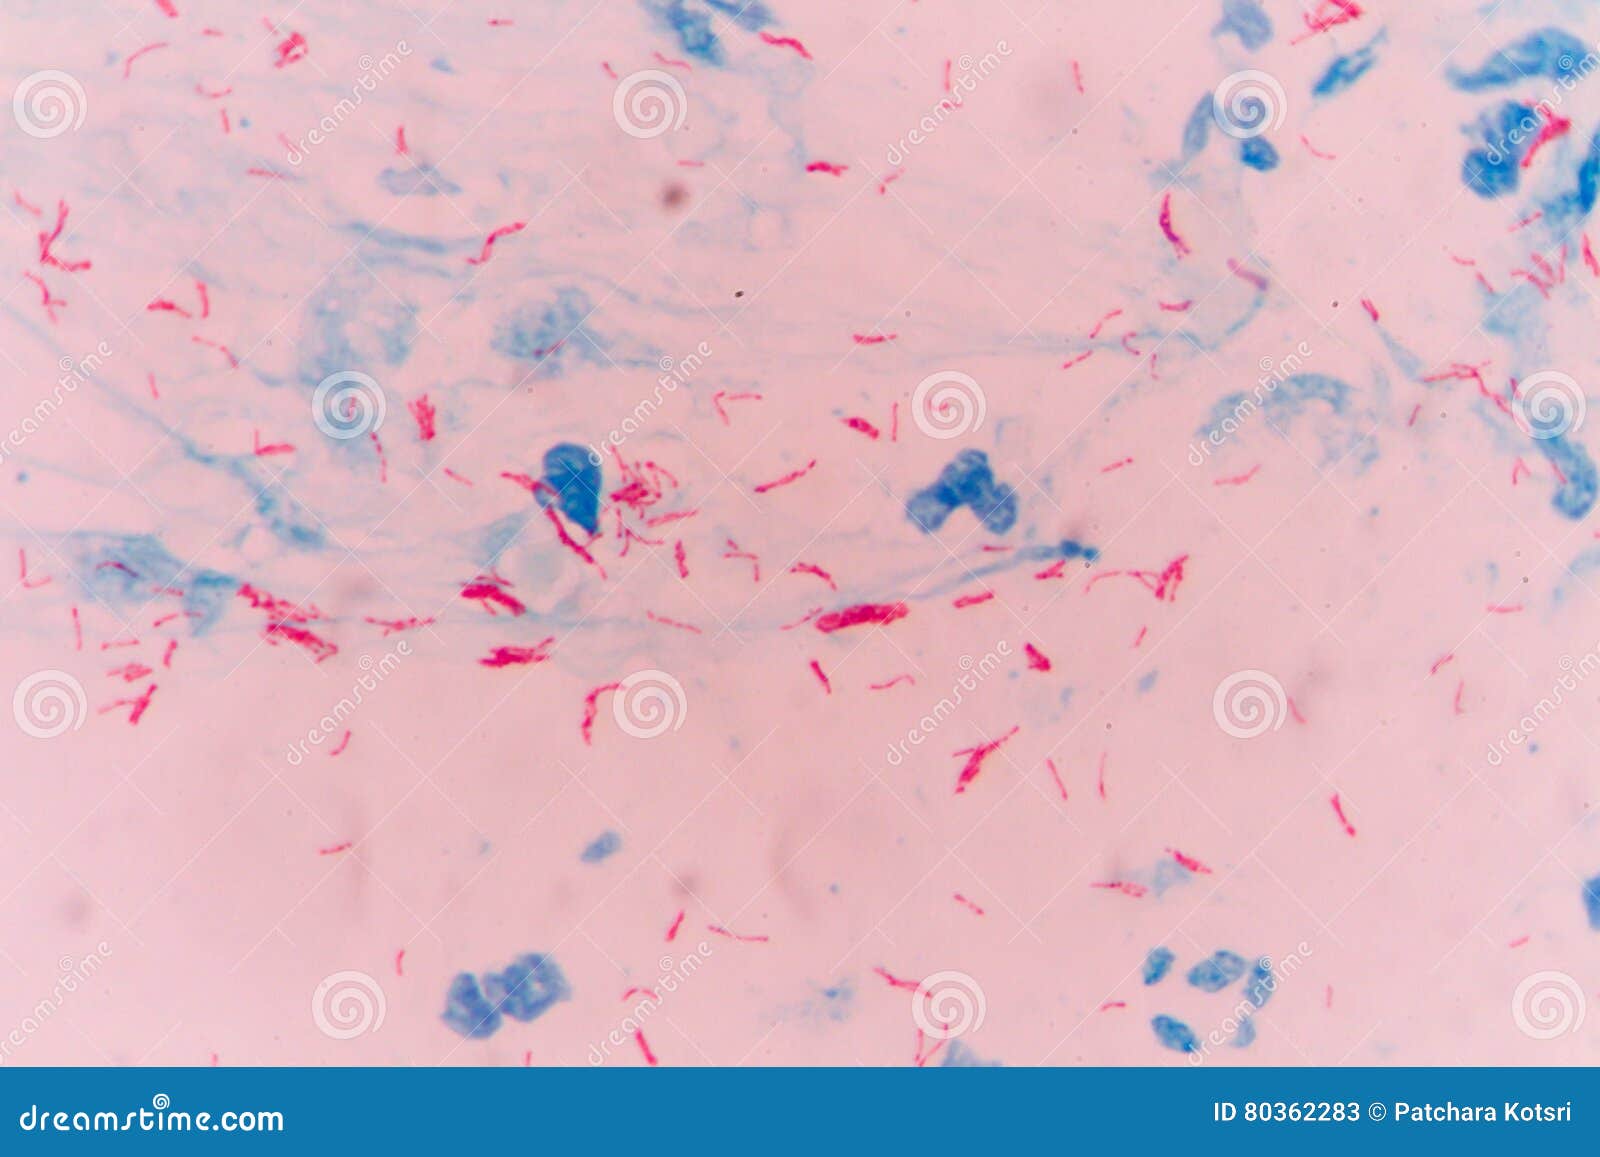 Палочки в мокроте. Микобактерии туберкулеза под микроскопом. Микобактерии туберкулеза микроскопия мокроты. Палочка Коха микроскопия. Палочка Коха по Цилю Нильсену.